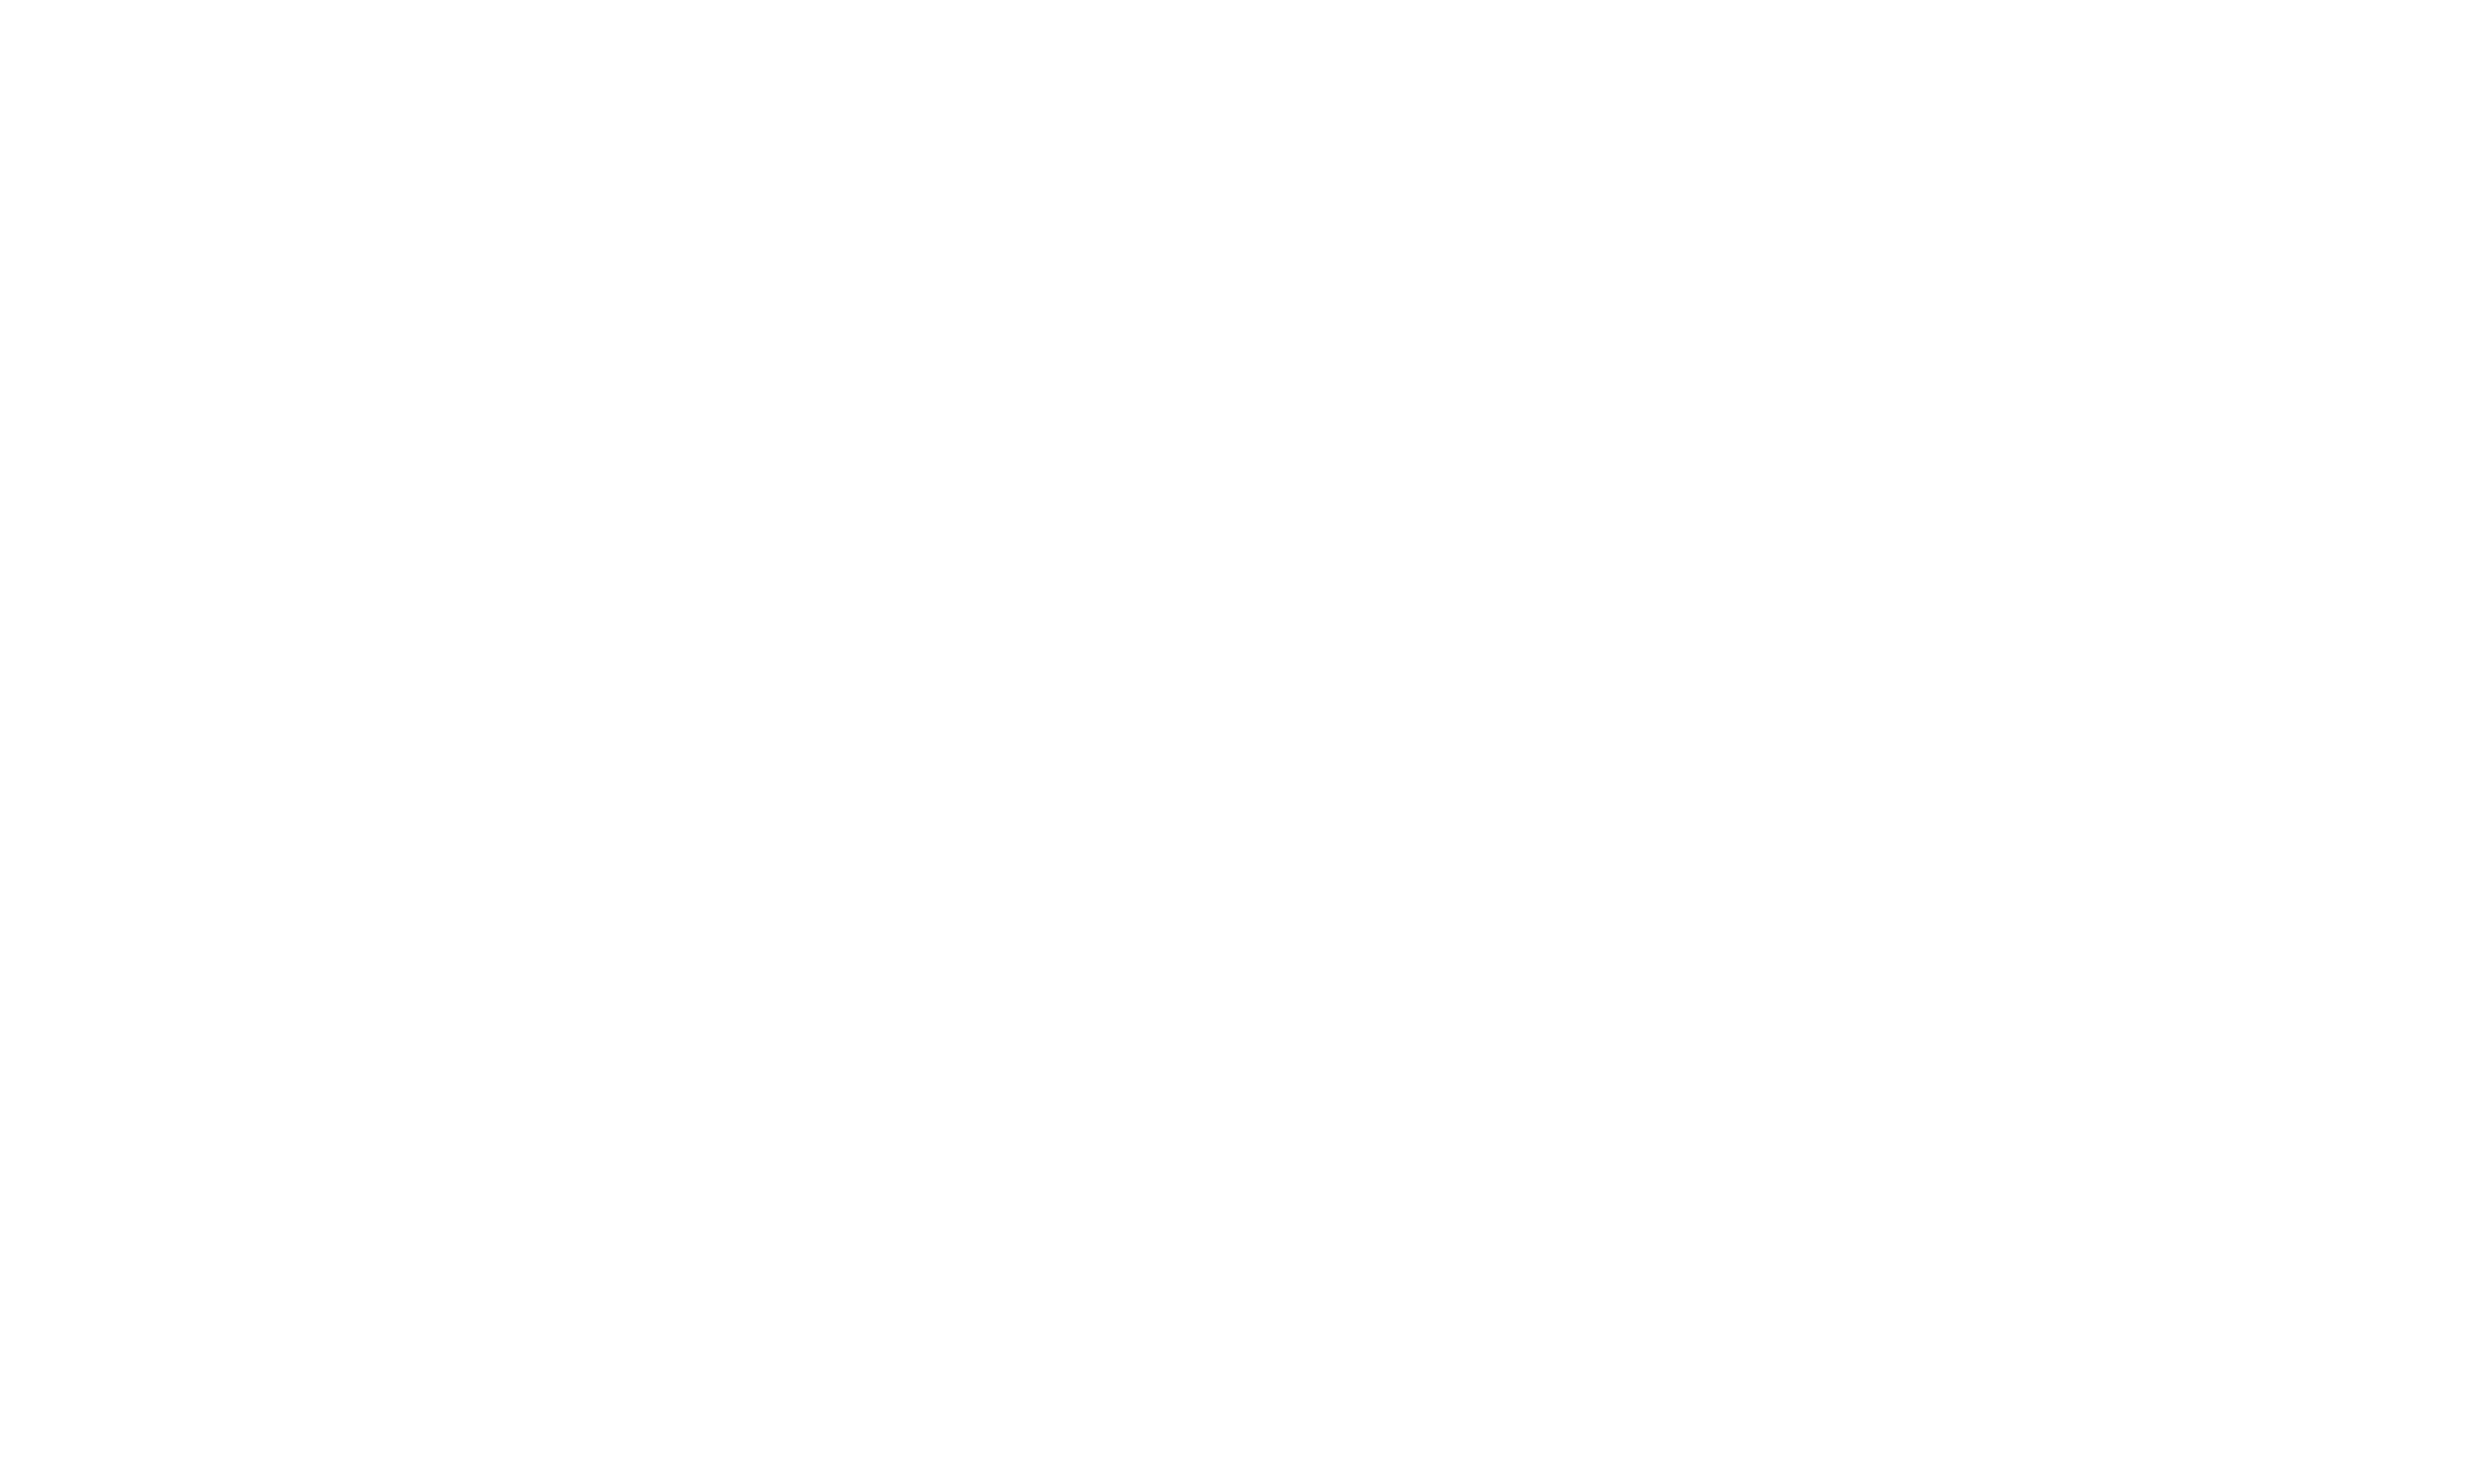 BestBNB conciergerie